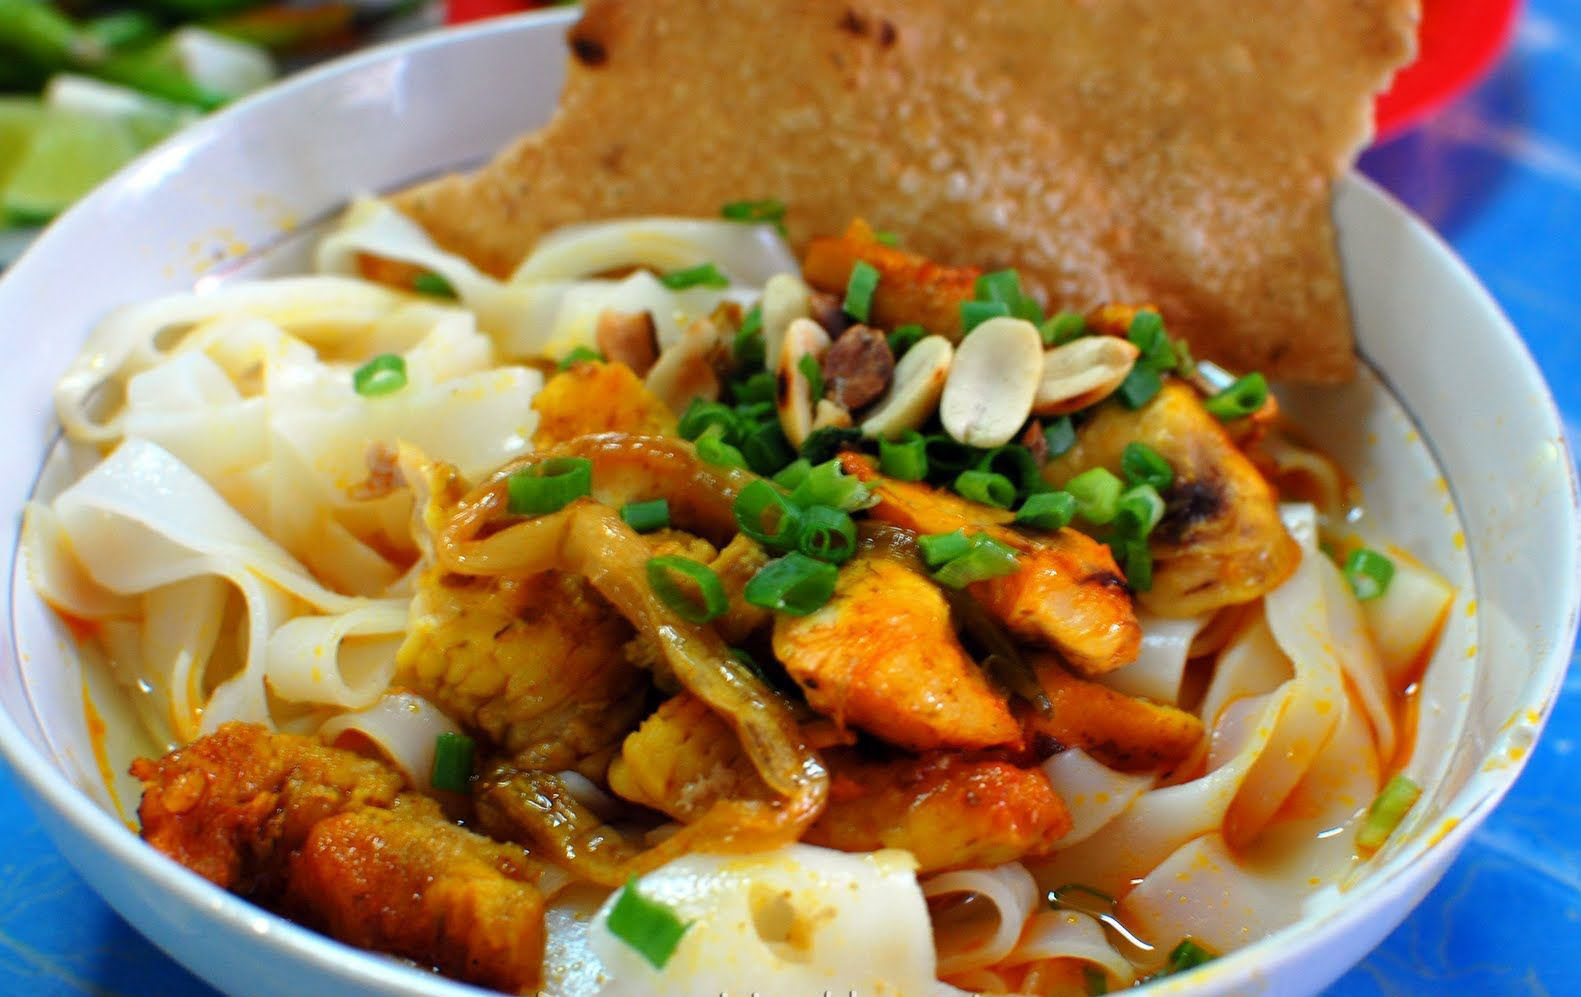 Mi Quang- an indispensable dish when going to Da Nang